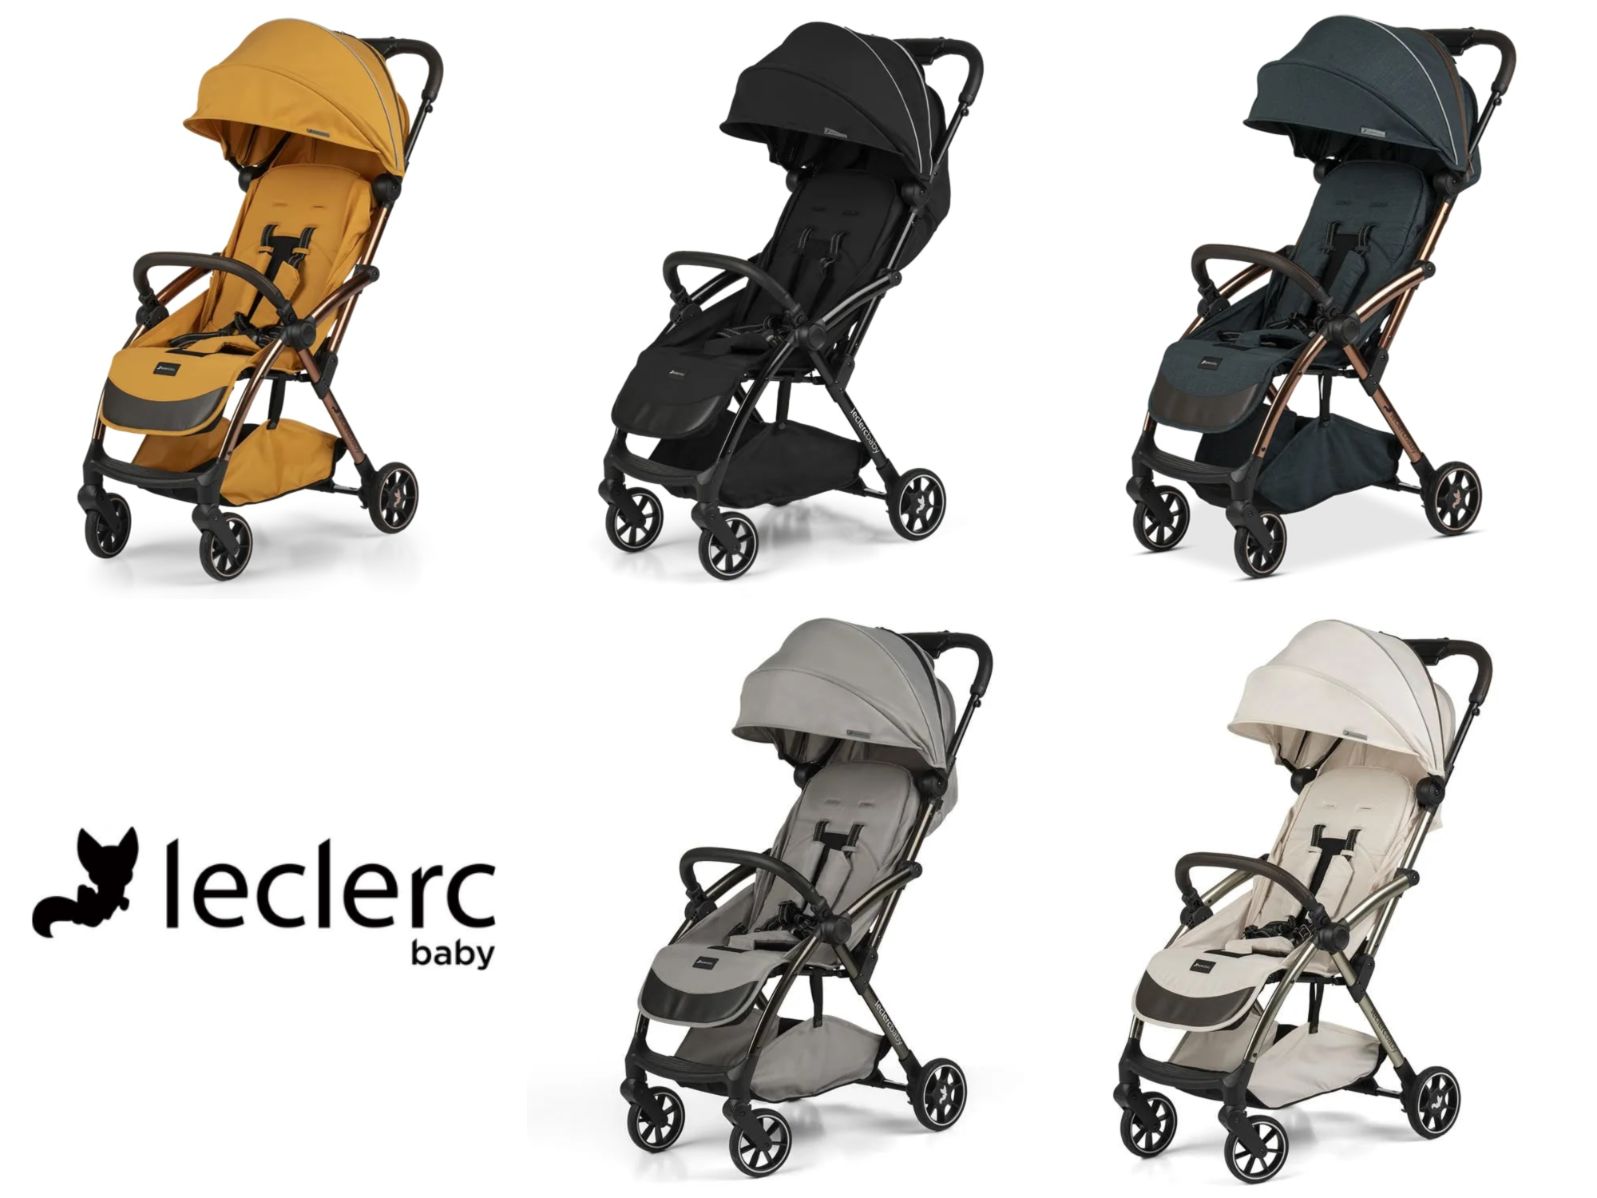 Leclerc Influencer air lightweight stroller